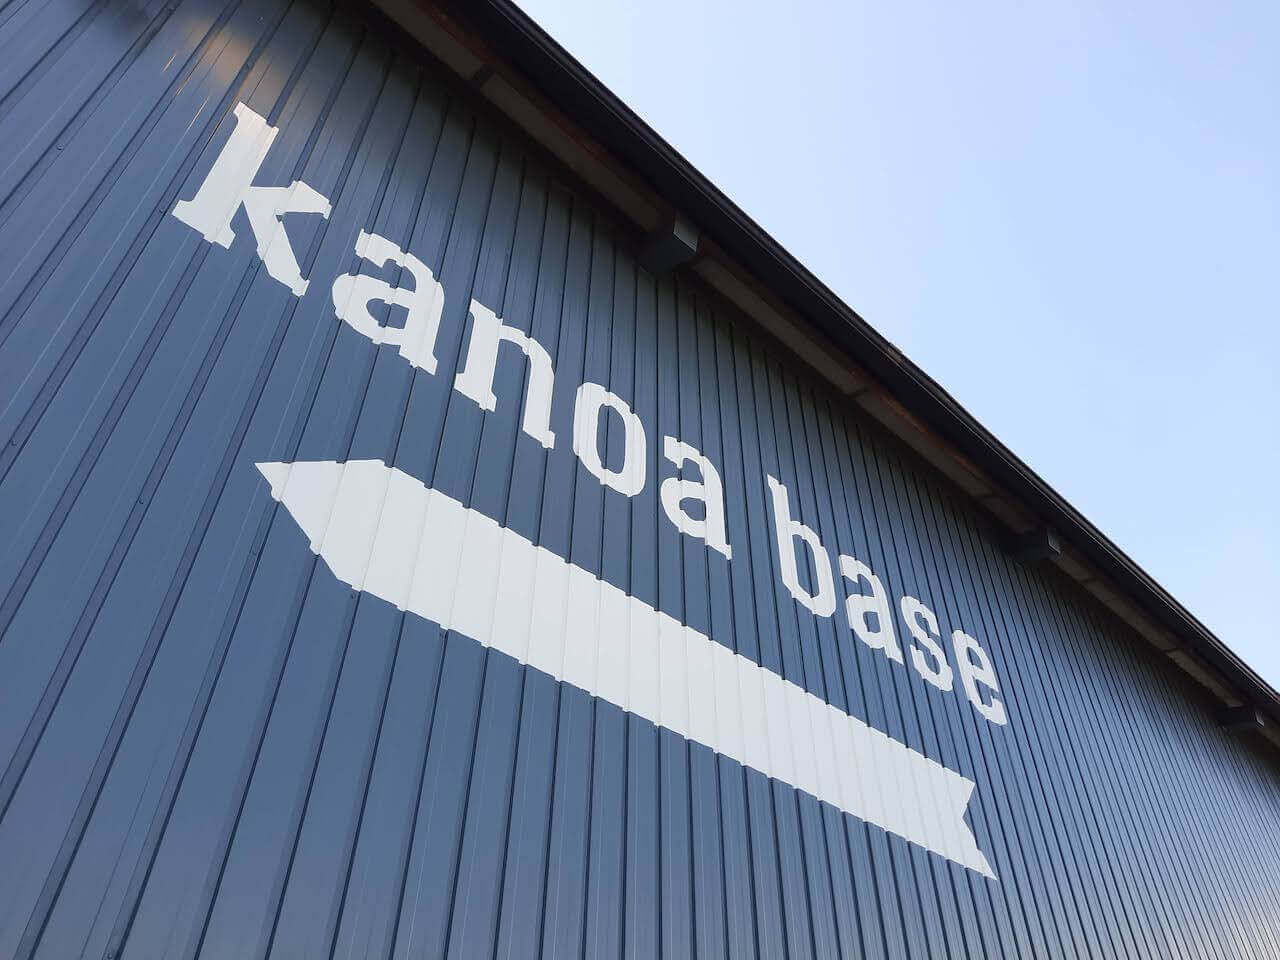 カノアベース-カノアカーレンタル-キャンピングカーレンタル-kanoabase